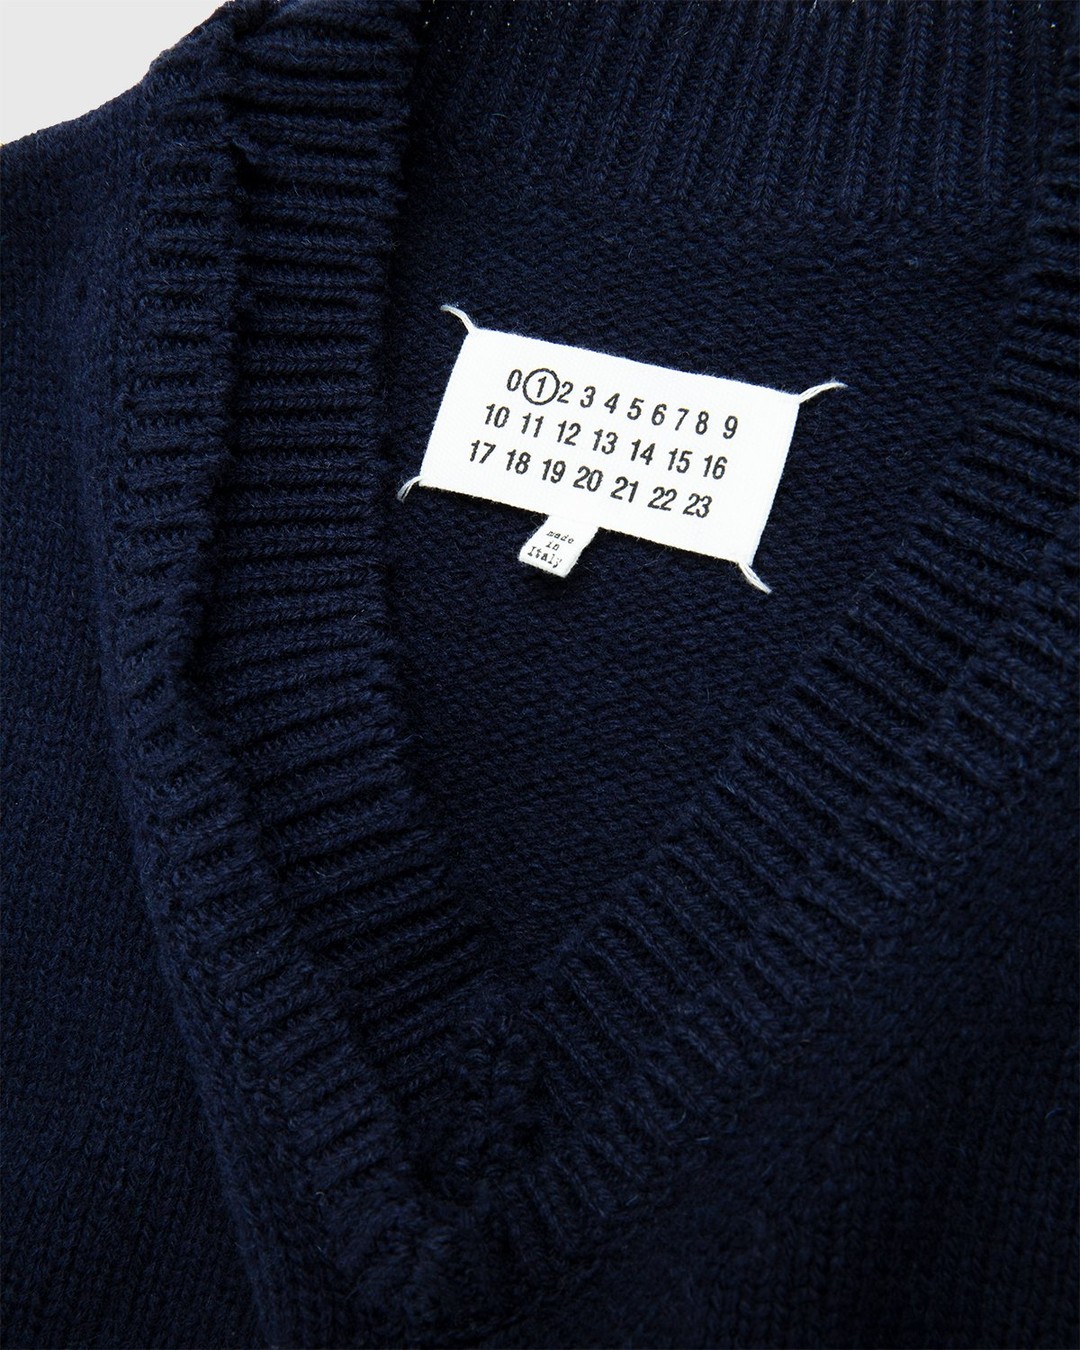 Maison Margiela – Sweater Navy - Knitwear - Blue - Image 3